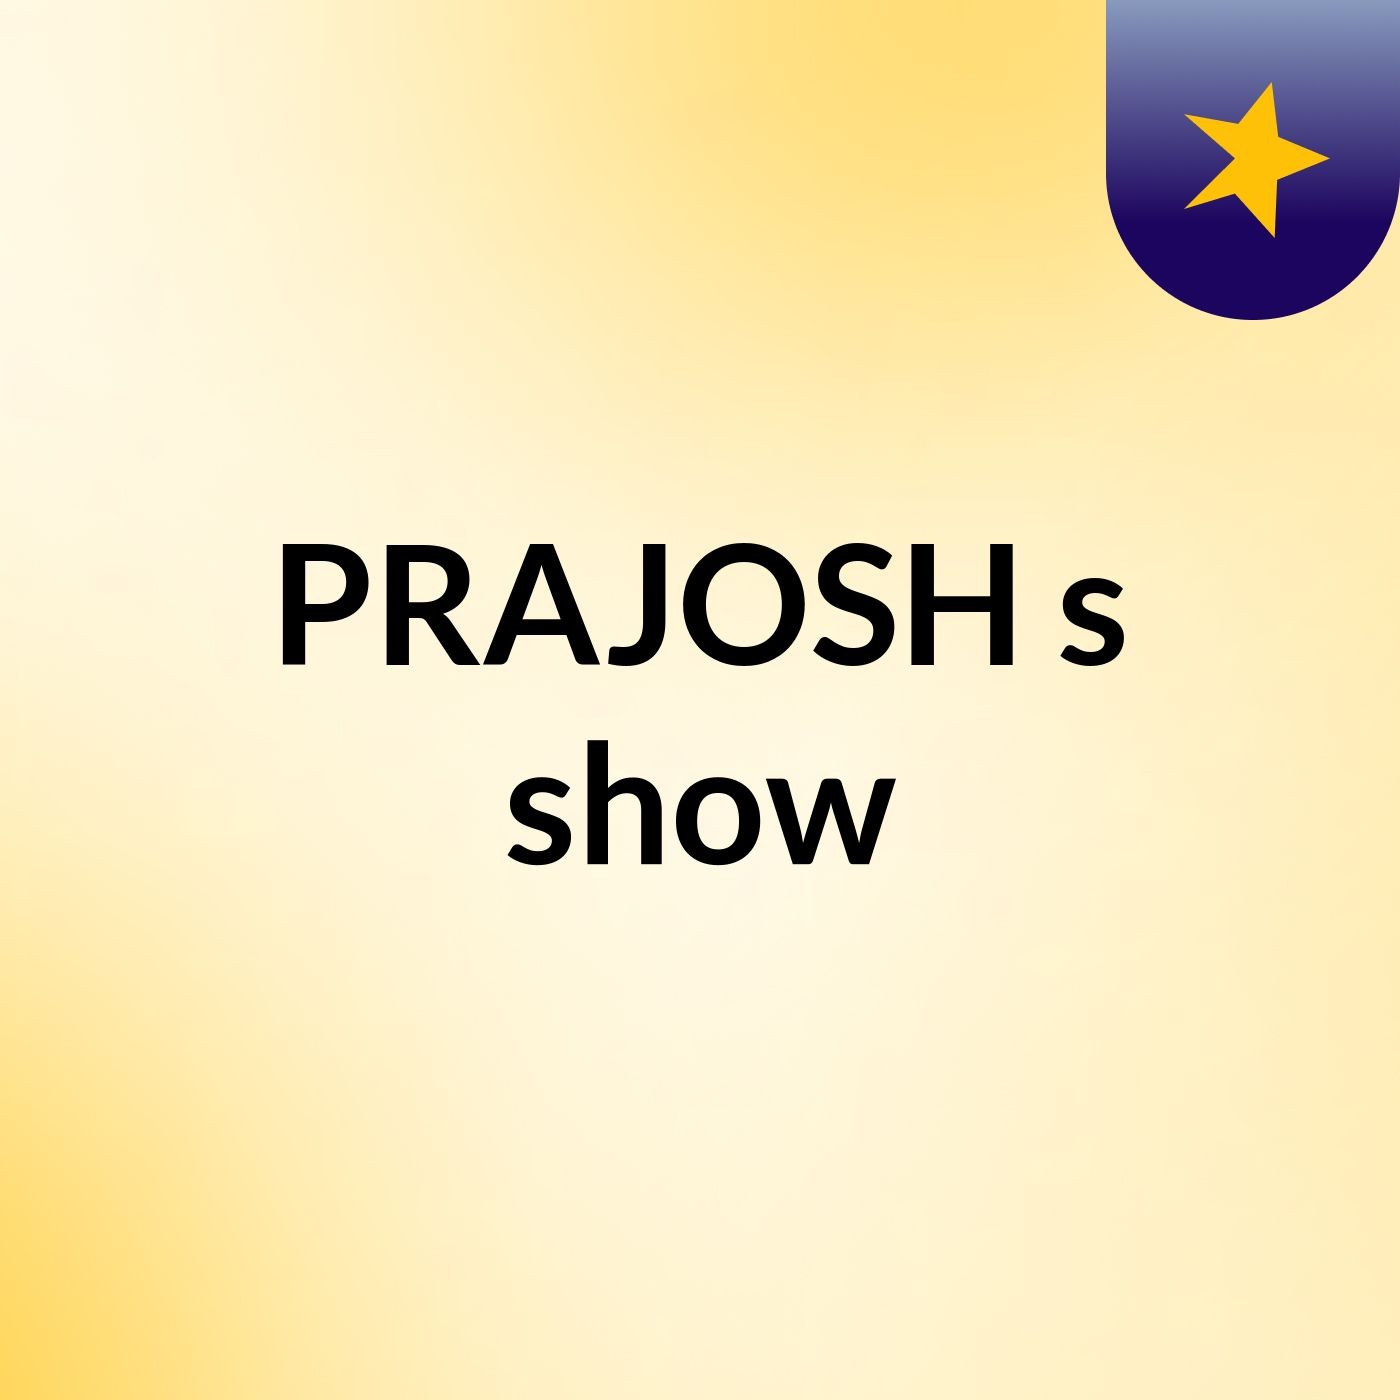 PRAJOSH's show